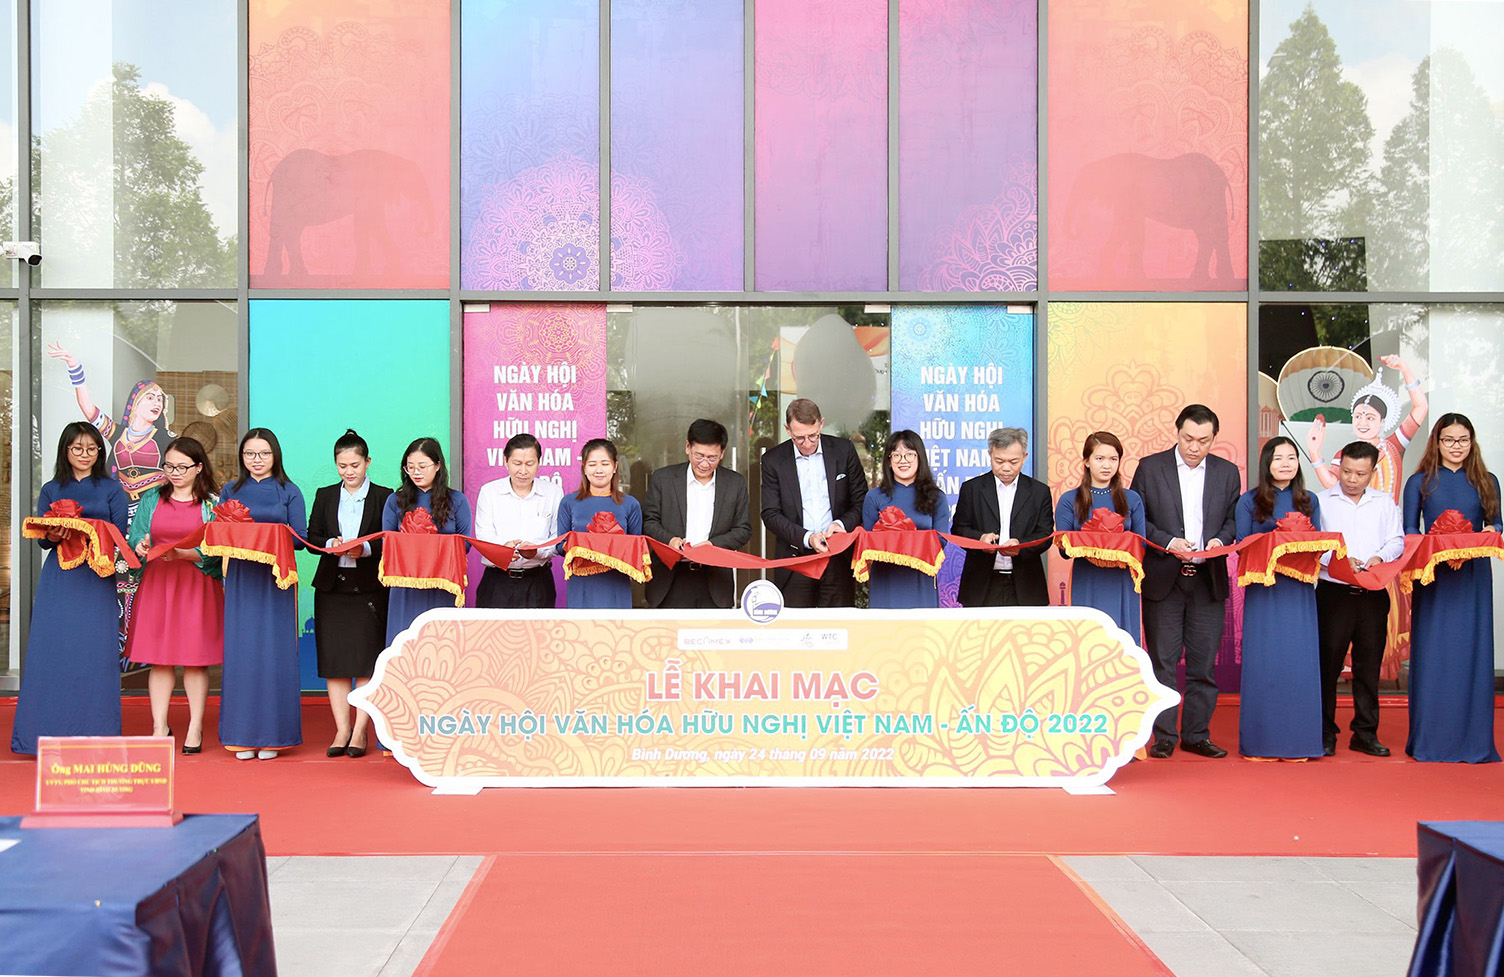 các đại biểu cắt băng khai mạc Ngày hội văn hóa hữu nghị Việt Nam-Ấn Độ 2022.